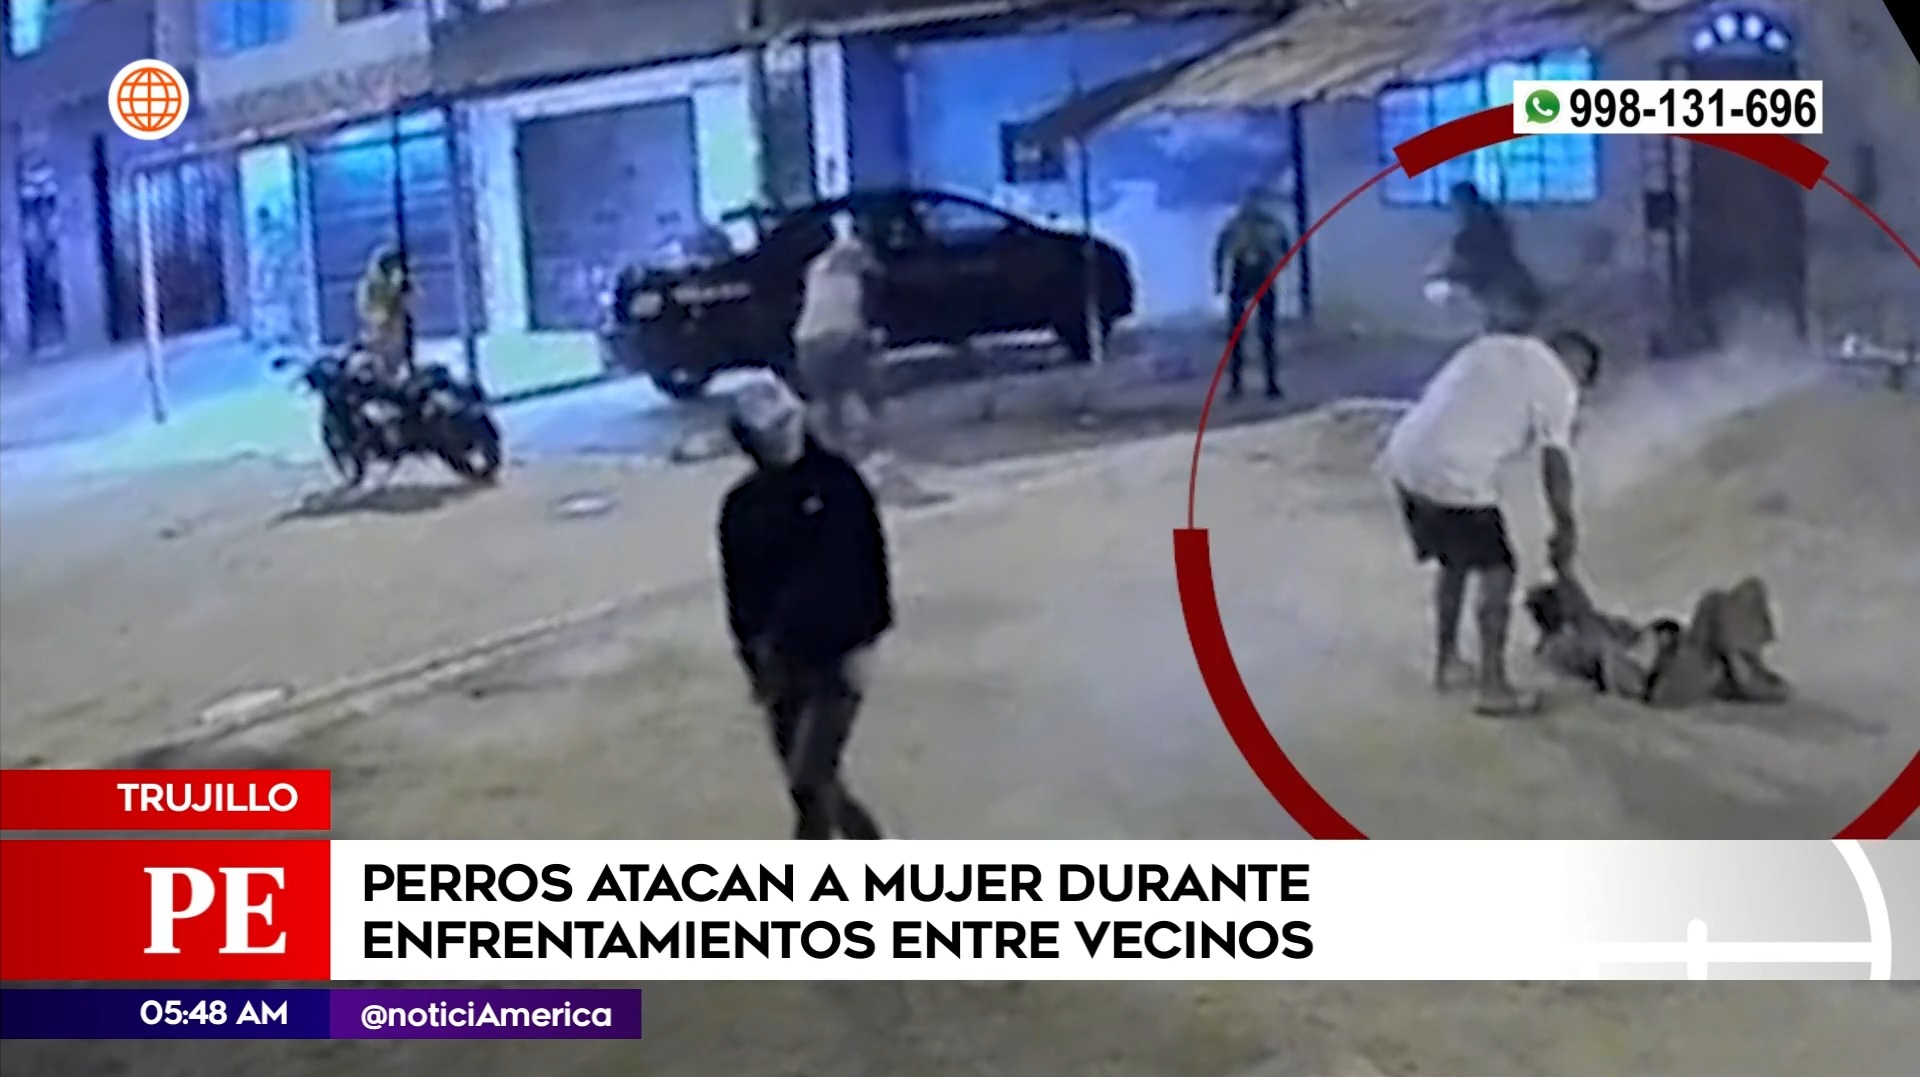 Mujer atacada por perros en Trujillo. Foto: América Noticias